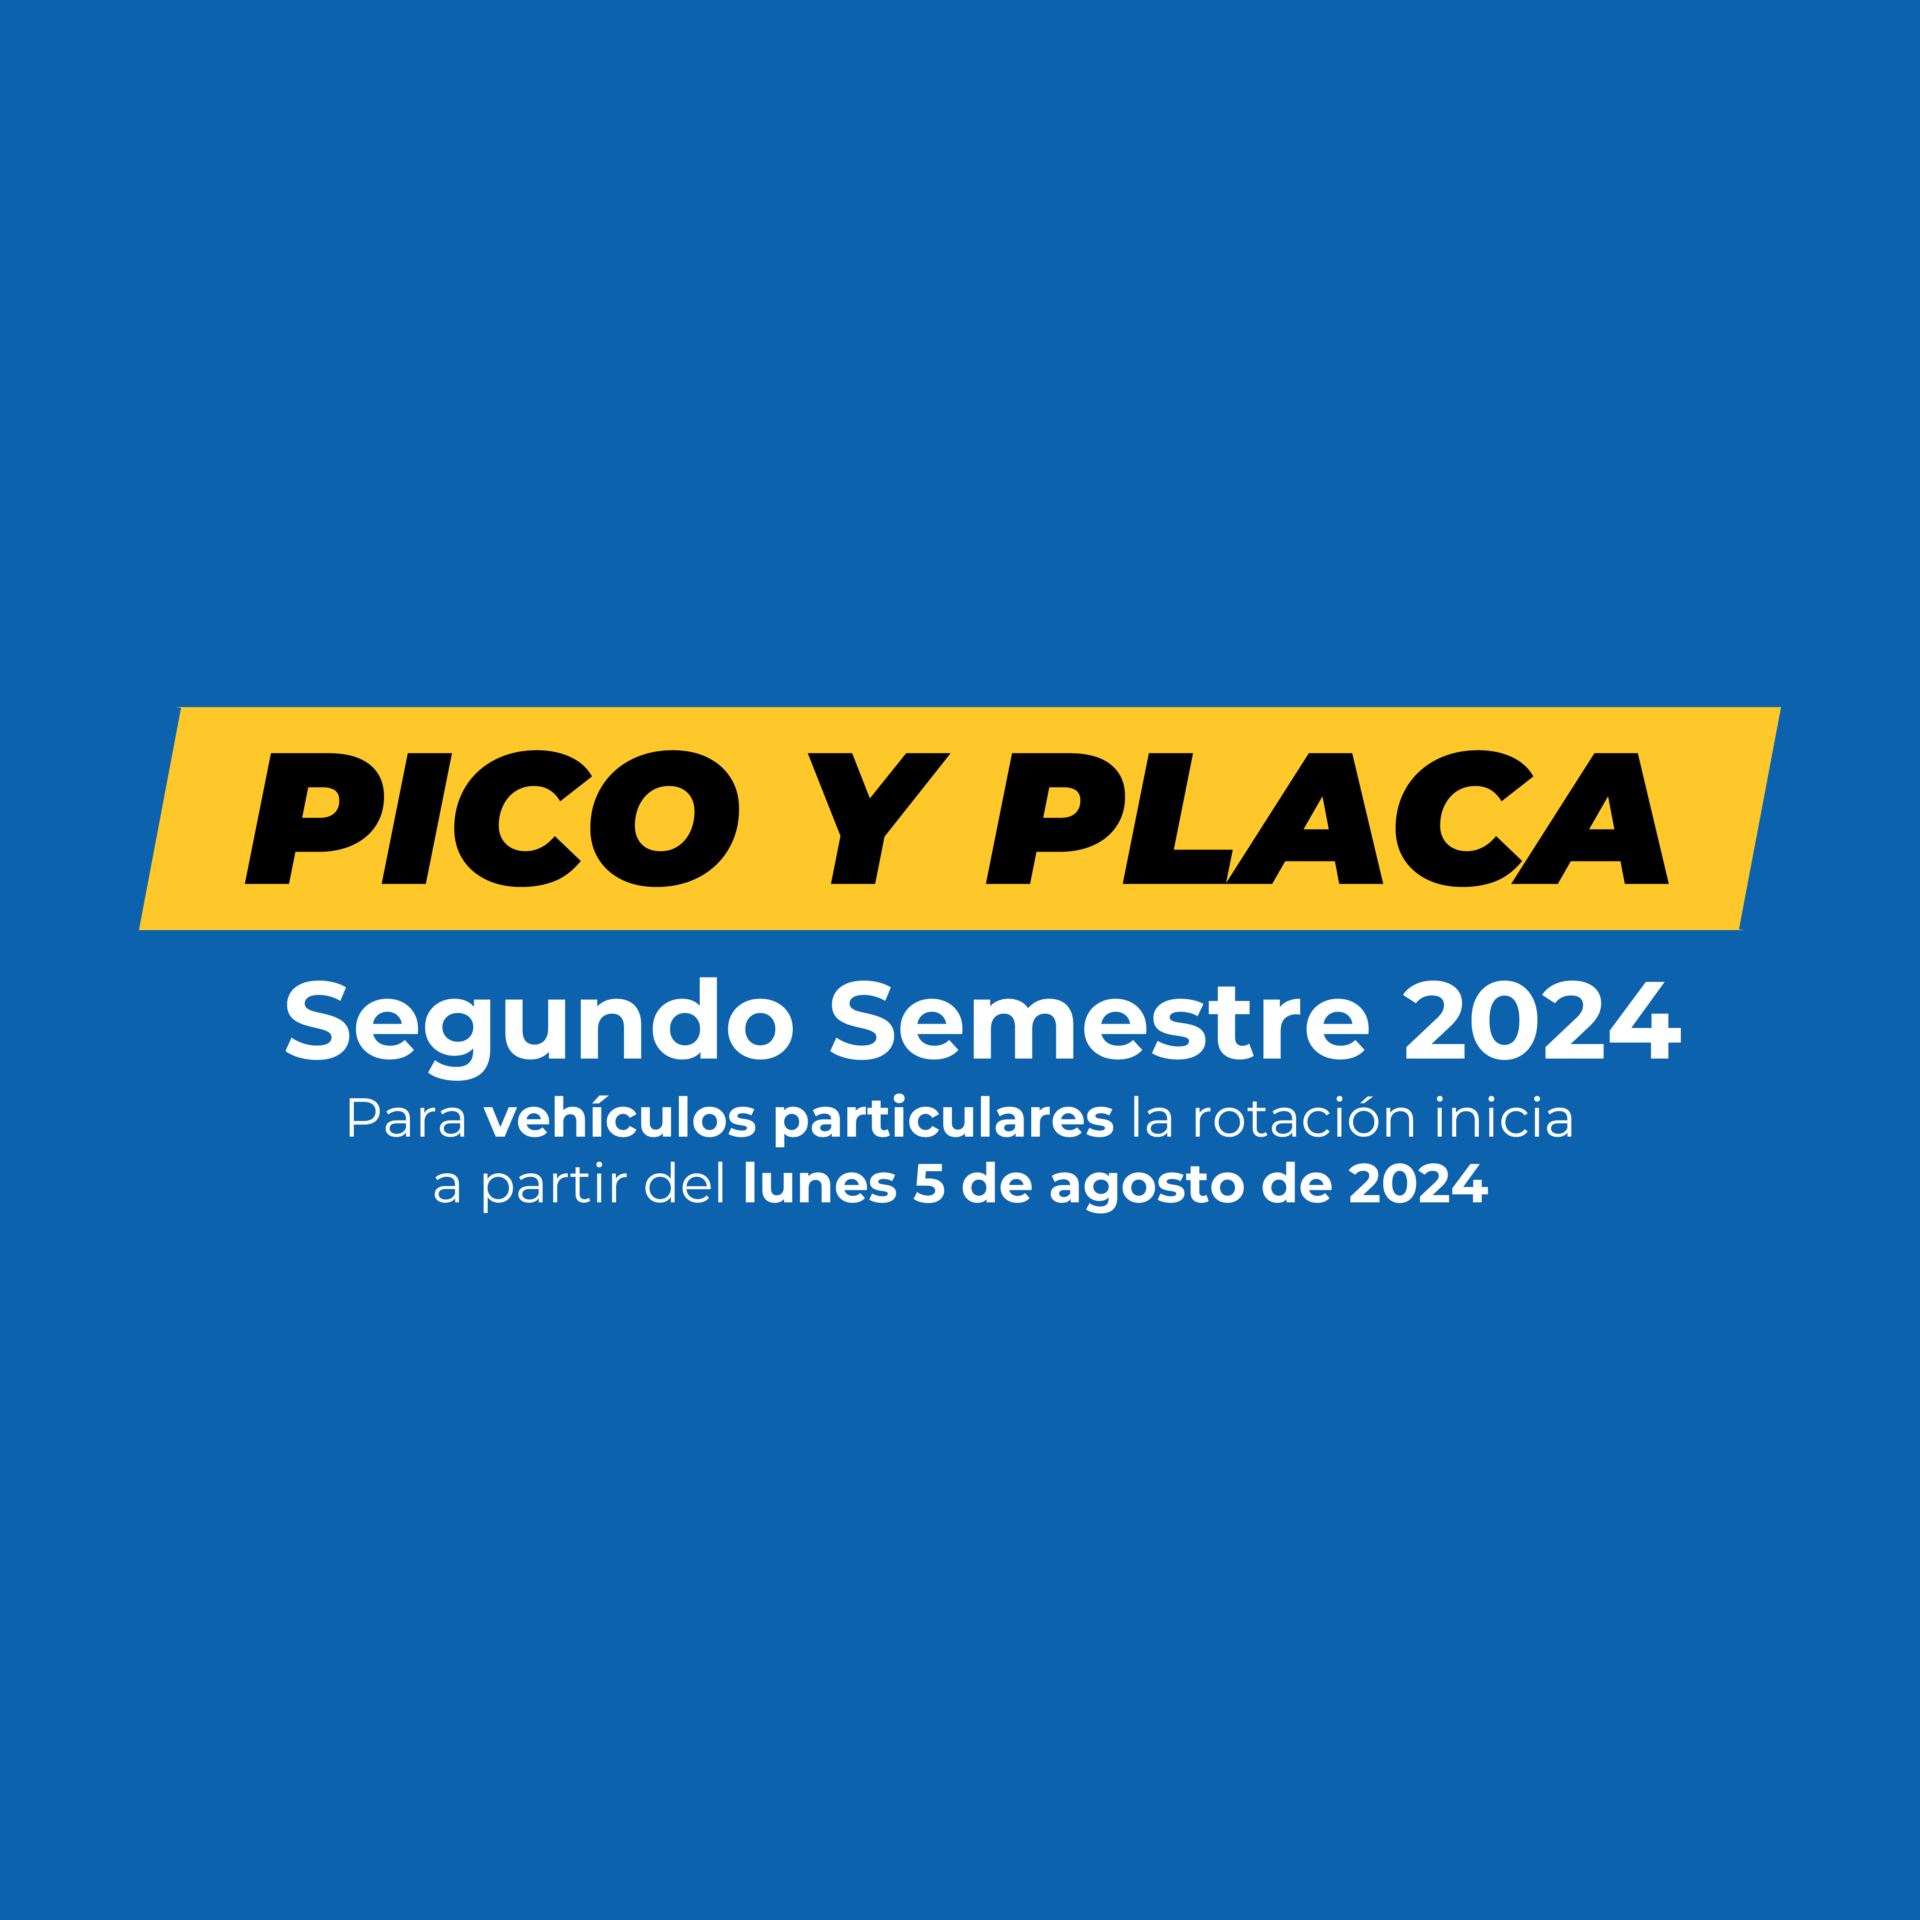 Pico y placa en Medellín: Actualízate para el segundo semestre de 2024